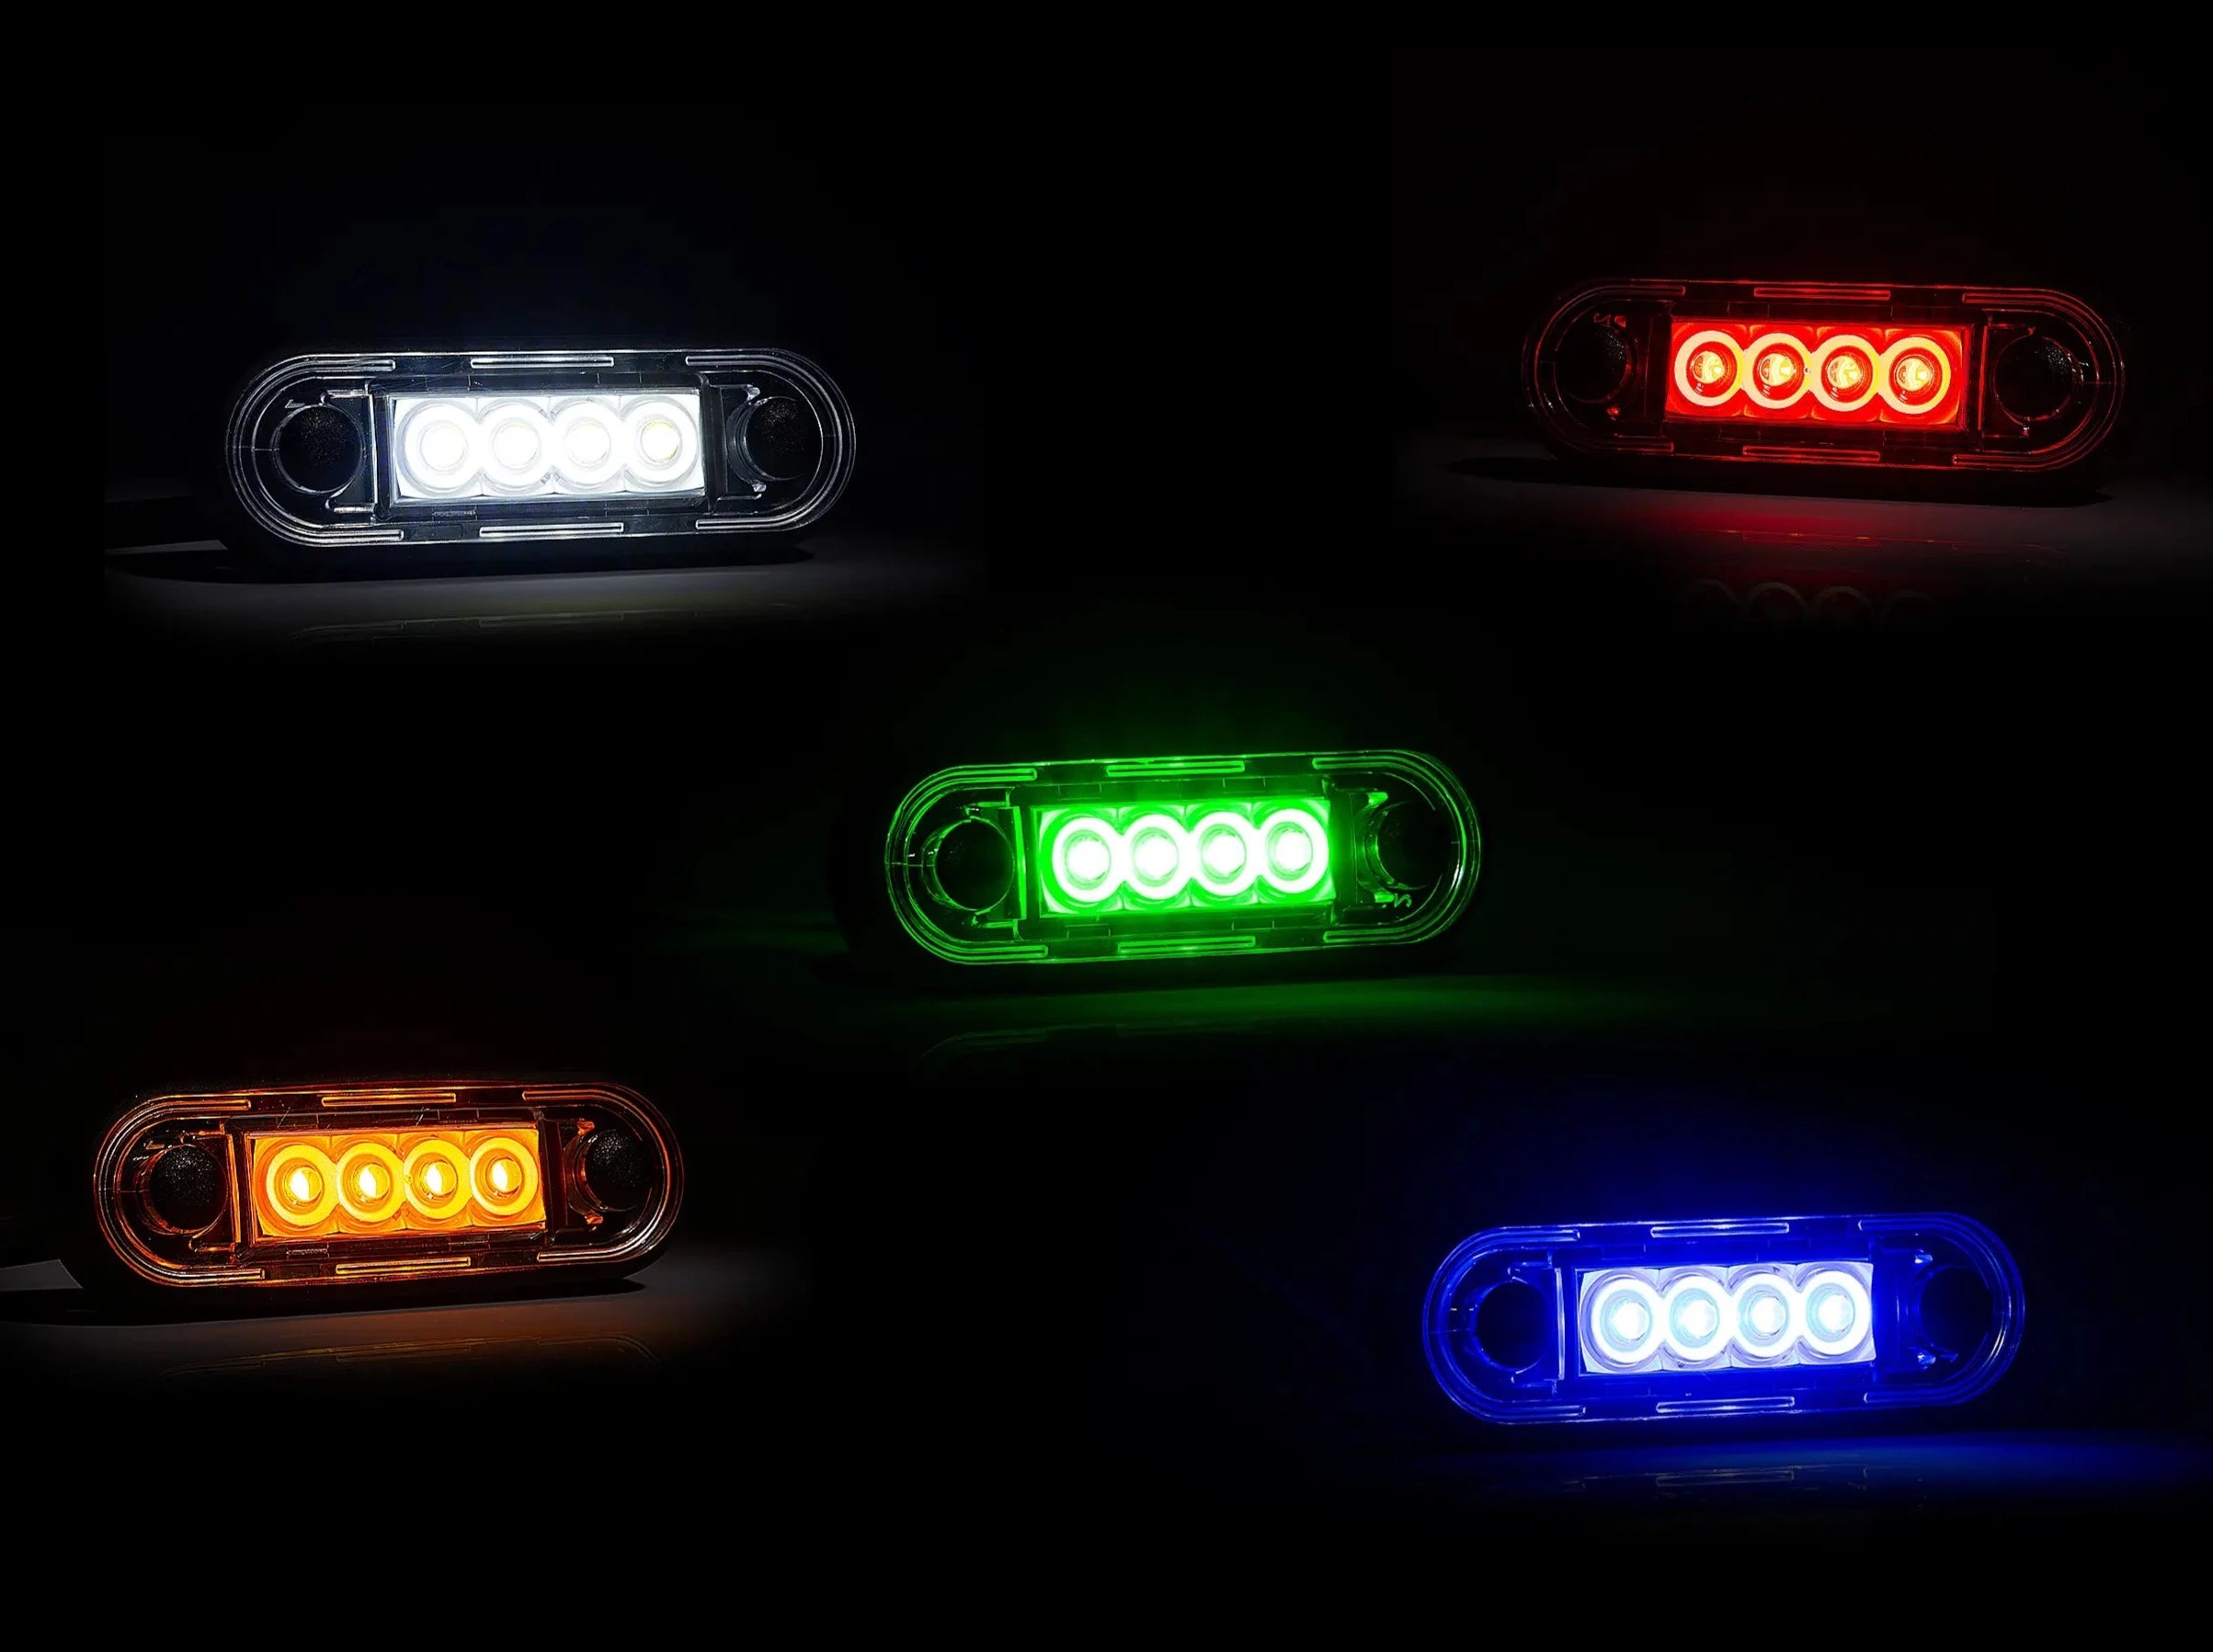 Luz de posición LED premium para barras de camiones y barras parachoques - spo-cs-disabled - spo-default - spo-disabled - spo-notify-me-disa